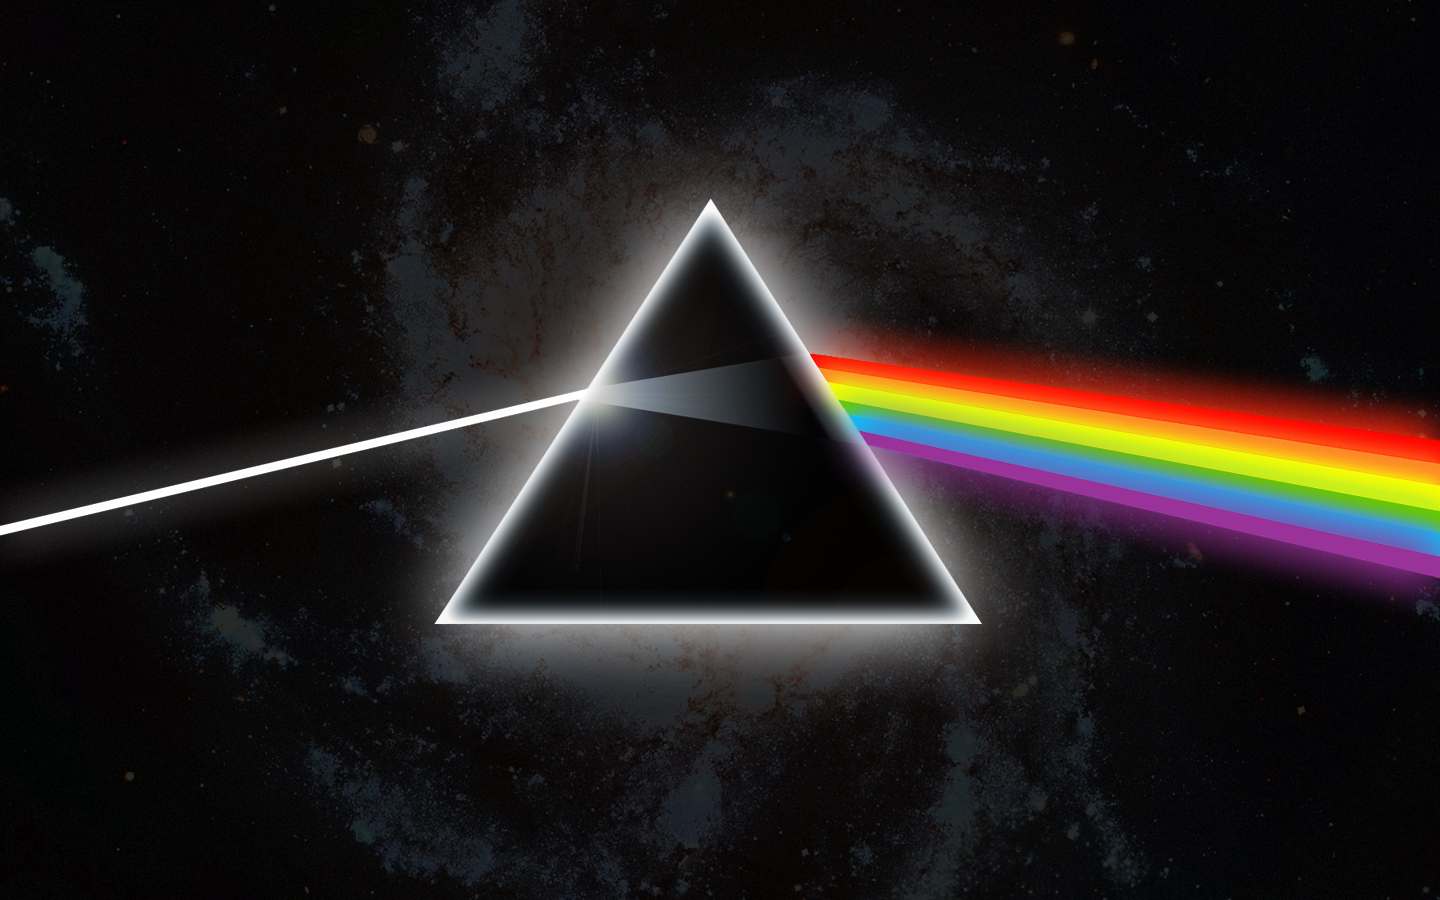 Pink Floyd Pink Floyd Wallpaper